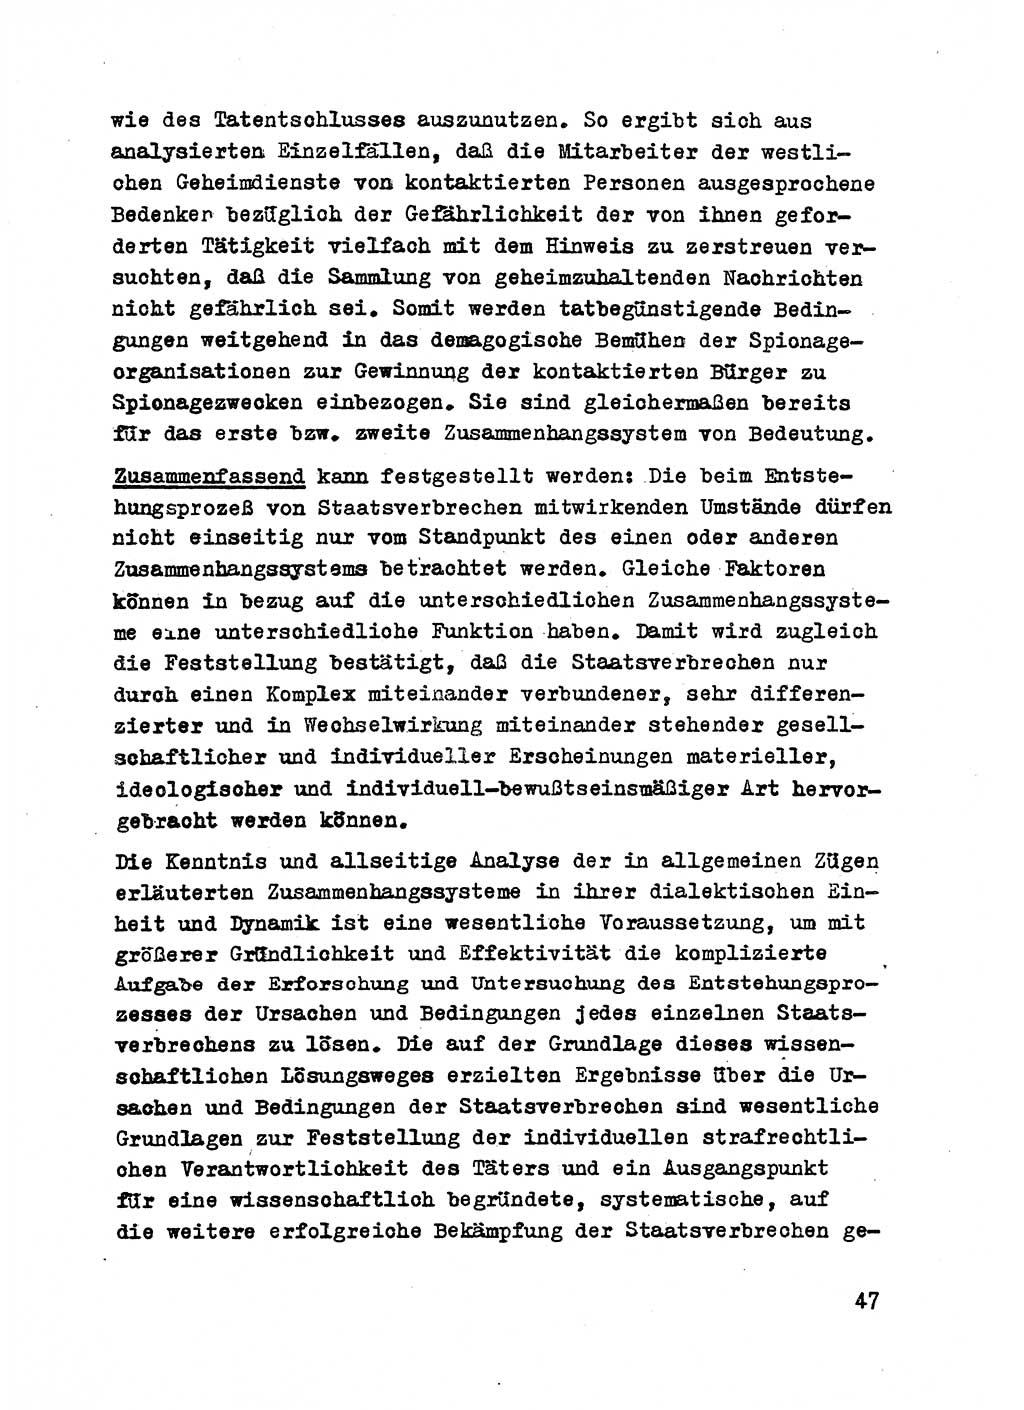 Strafrecht der DDR (Deutsche Demokratische Republik), Besonderer Teil, Lehrmaterial, Heft 2 1969, Seite 47 (Strafr. DDR BT Lehrmat. H. 2 1969, S. 47)